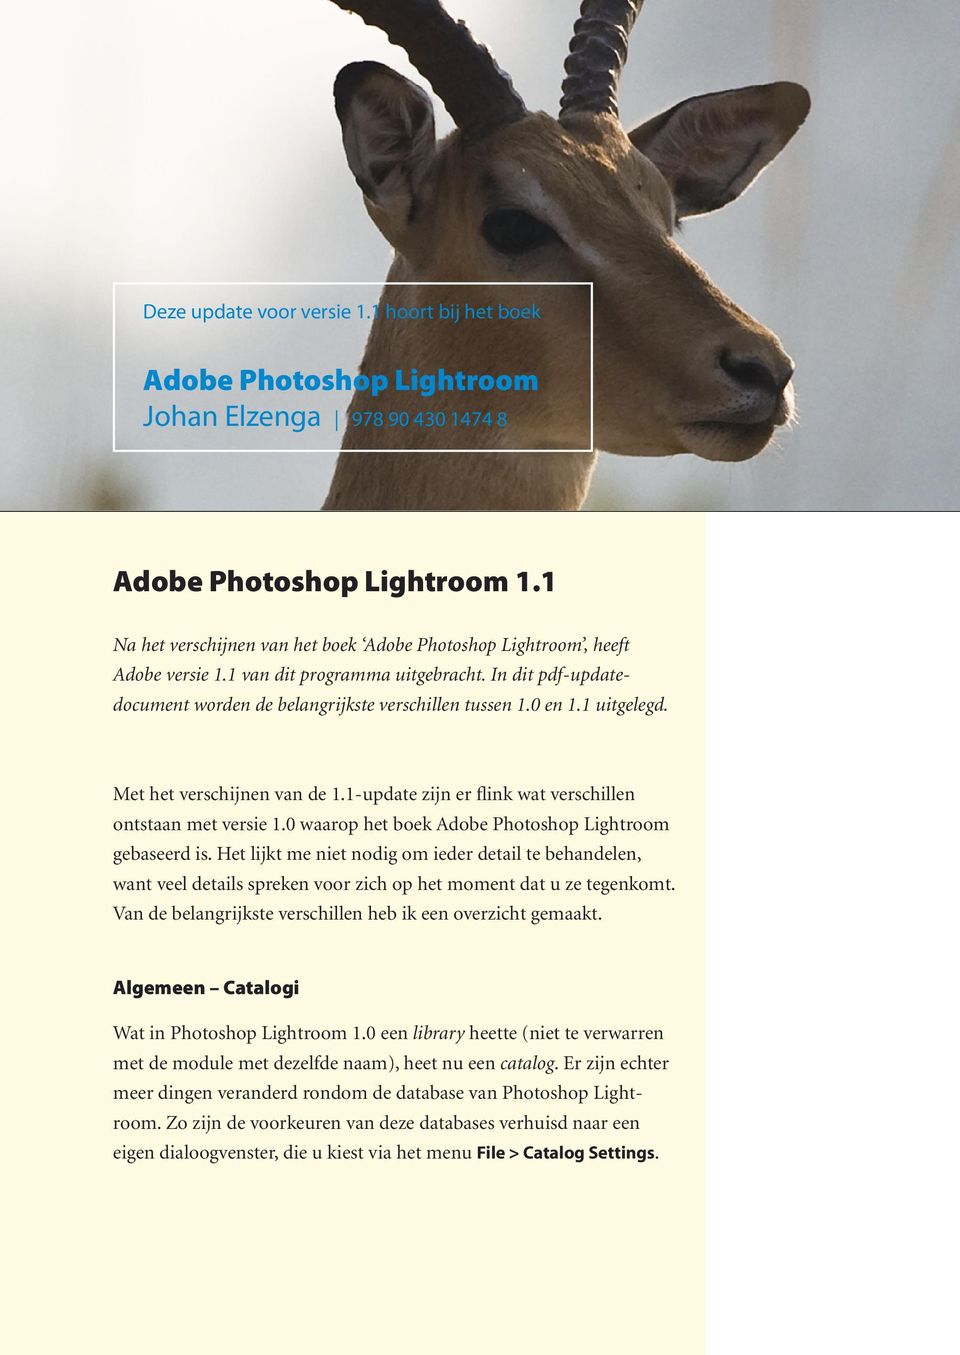 1 uitgelegd. Met het verschijnen van de 1.1-update zijn er flink wat verschillen ontstaan met versie 1.0 waarop het boek Adobe Photoshop Lightroom gebaseerd is.